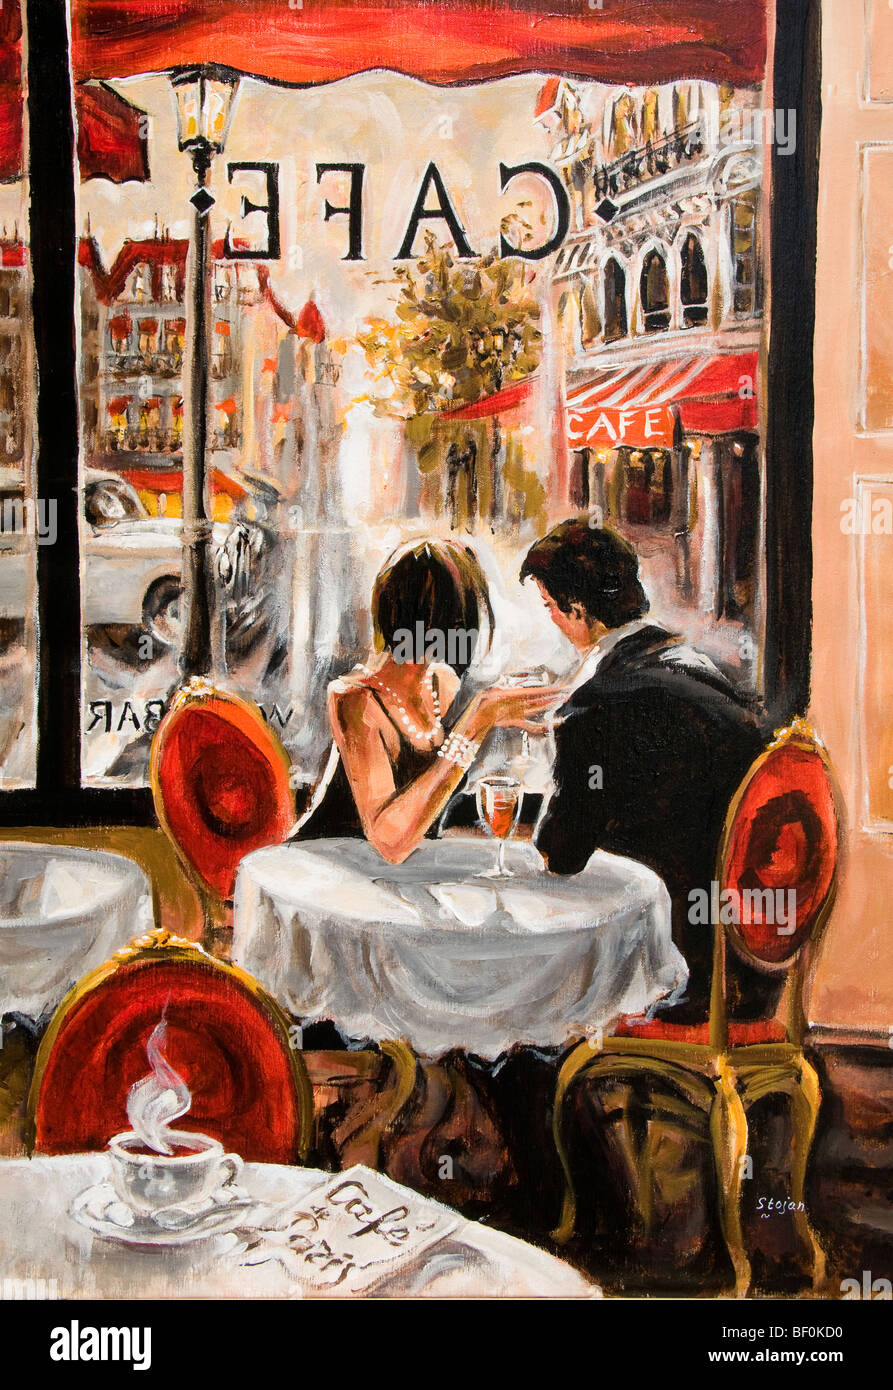 Peinture murale sur toile avec impression de nourriture, tableau d'art,  décoration de Restaurant, café, vin